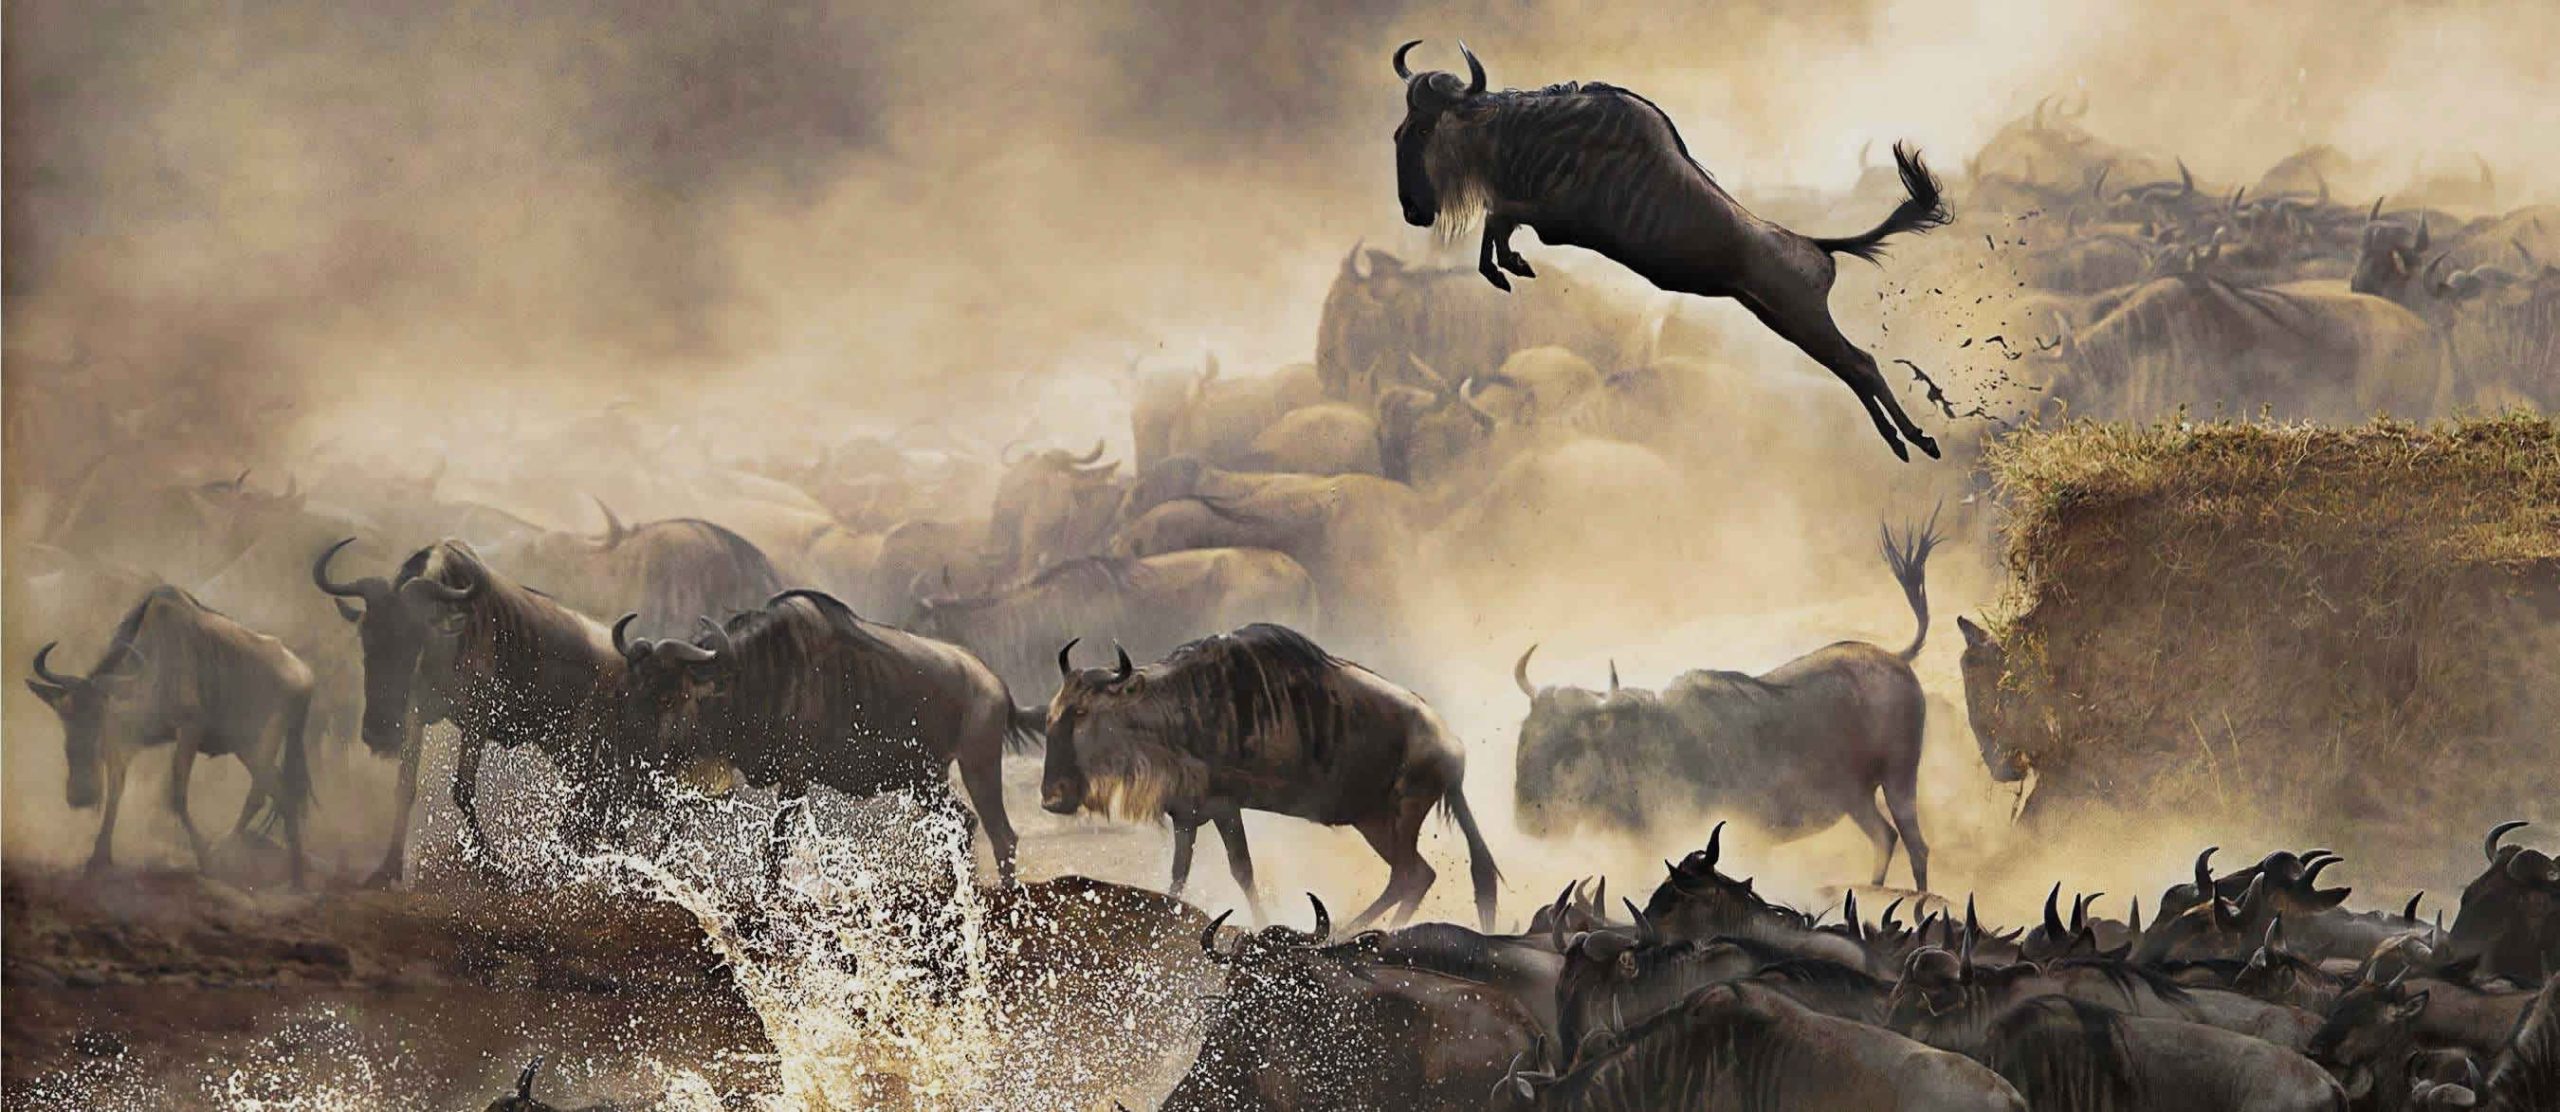 serengeti wildebeest migration 